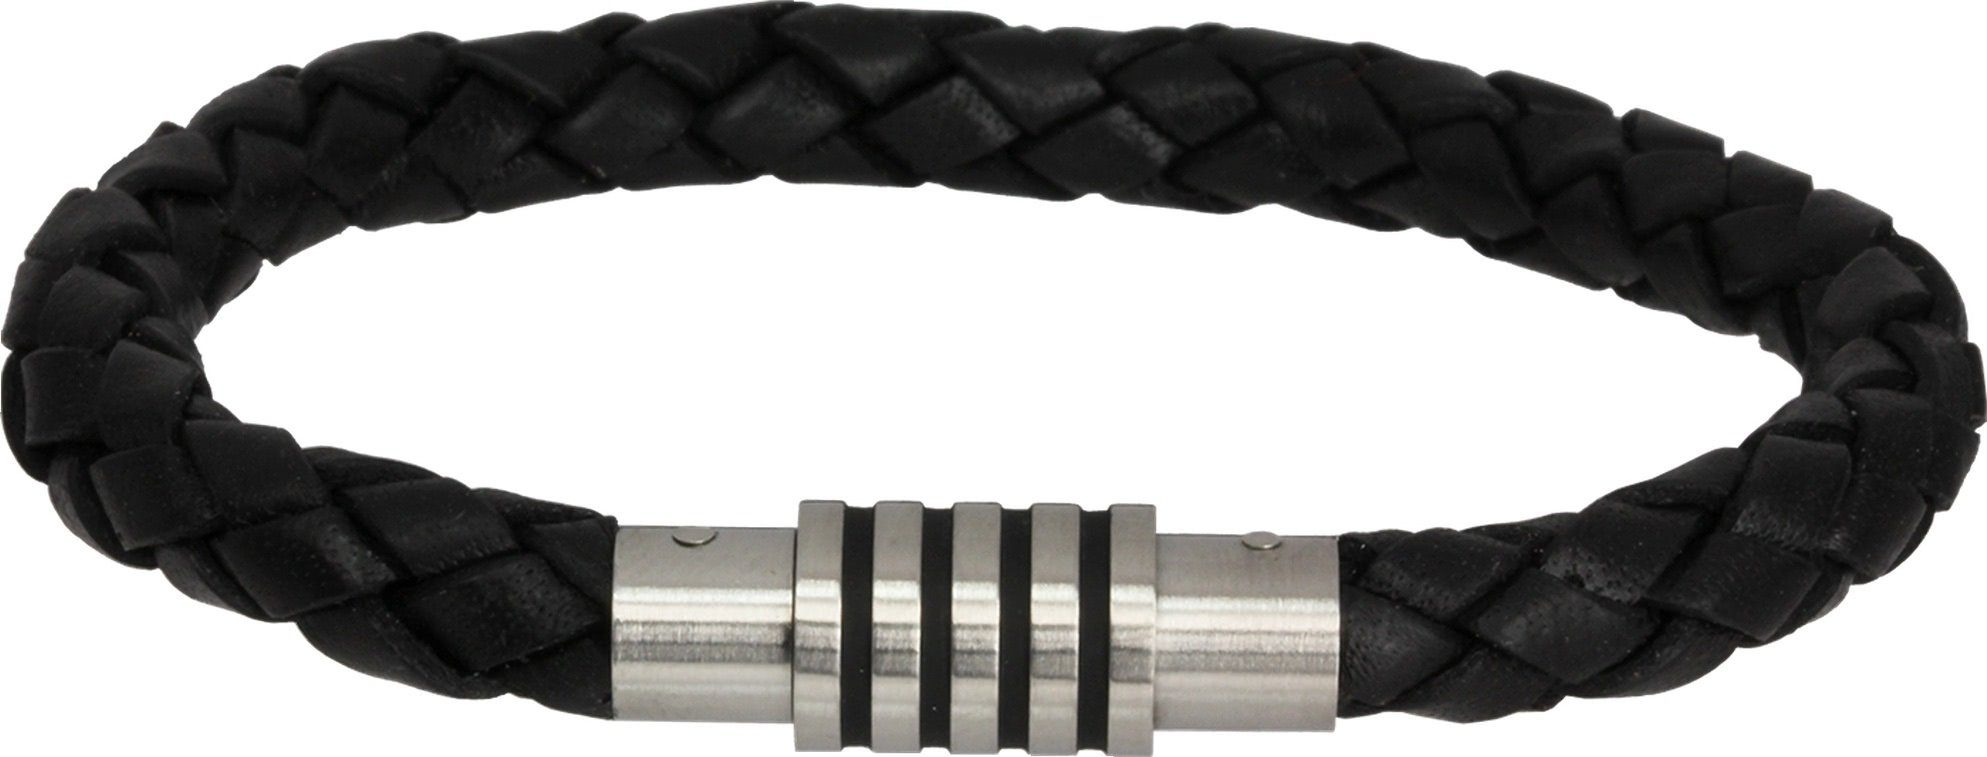 Amello Edelstahlarmband Amello Armband schwarz Herren Armschmuck (Armband), Herren Armband ca. 20,5cm, Edelstahl (Stainless Steel), Farbe: schwarz